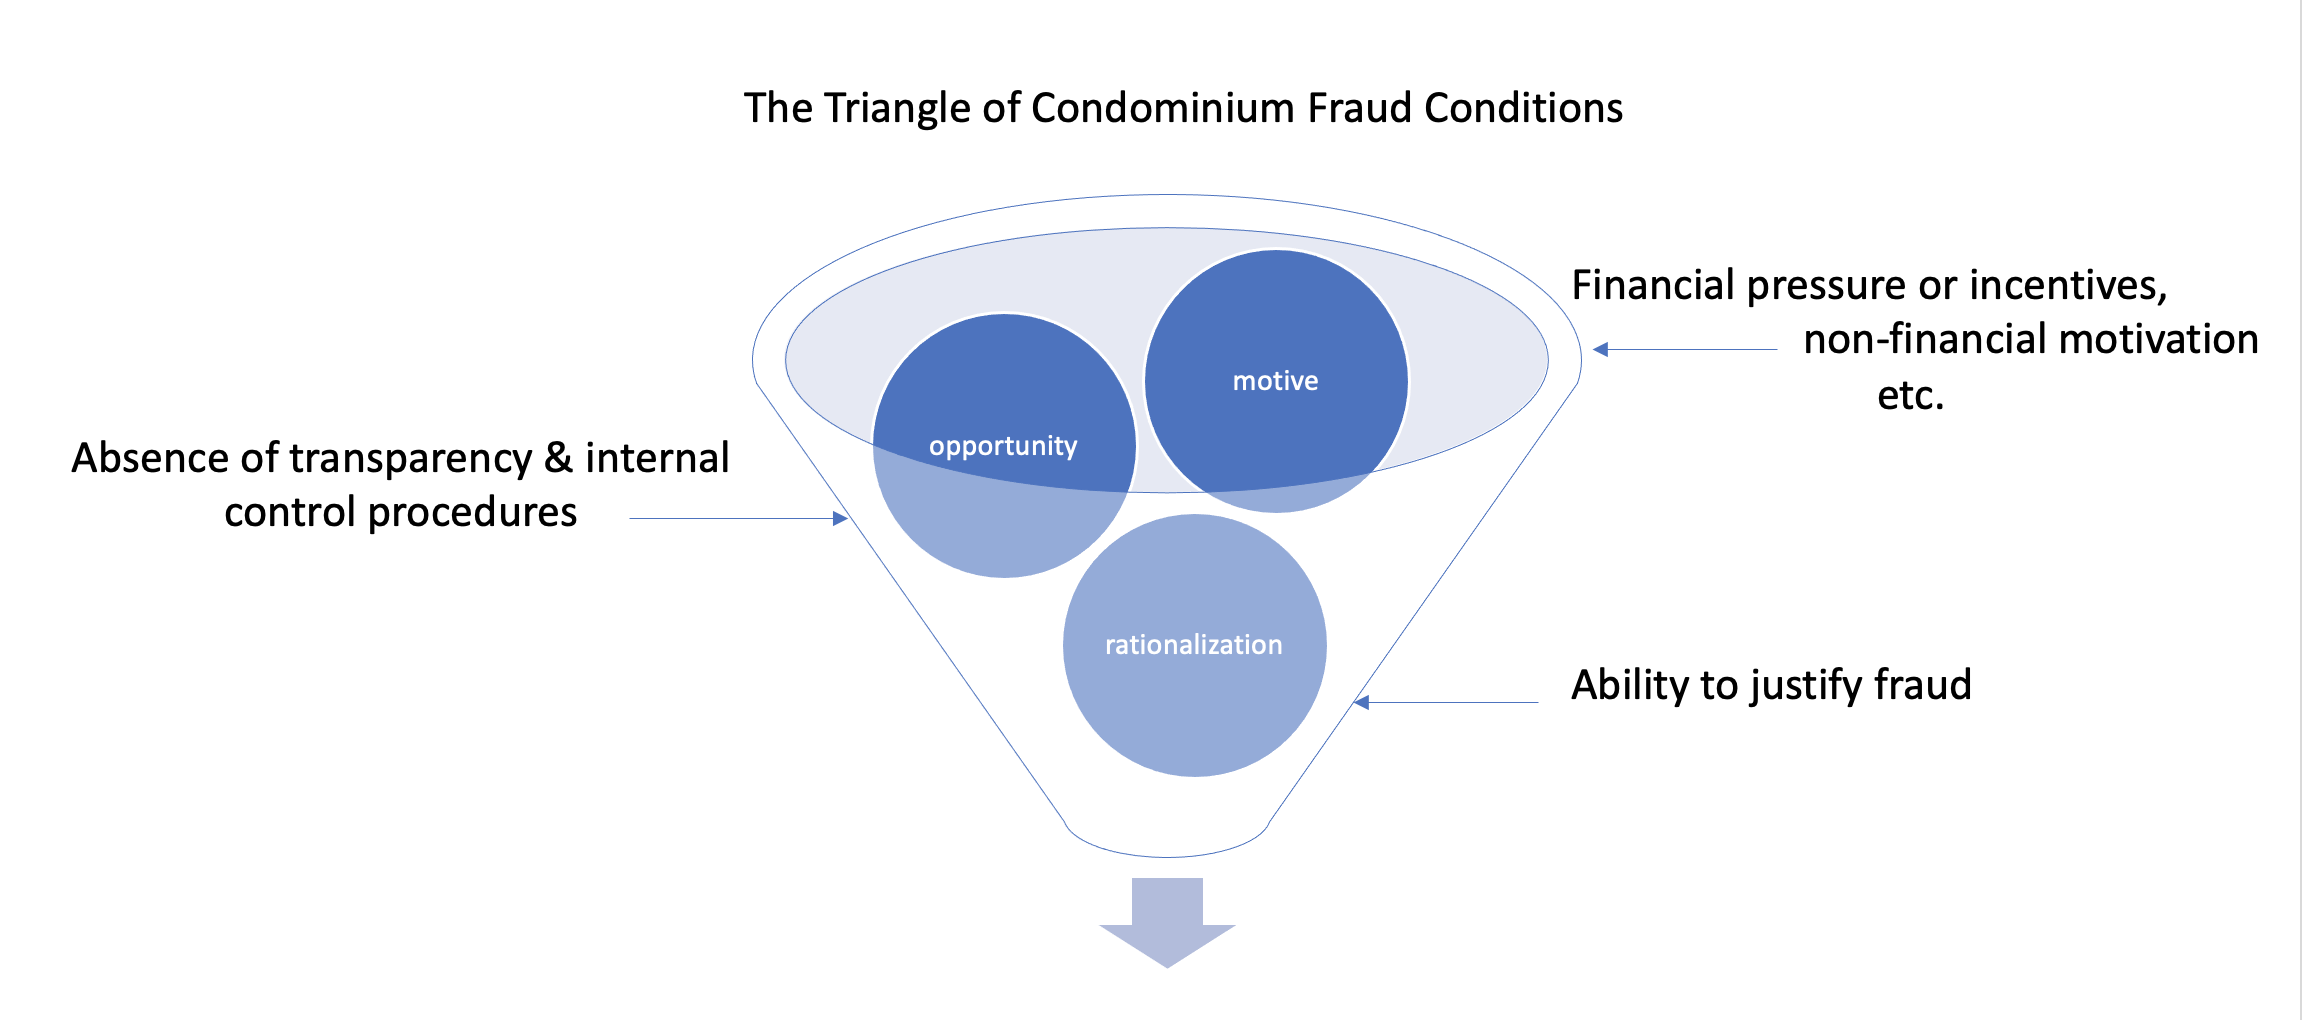 Preventing Condominium Fraud